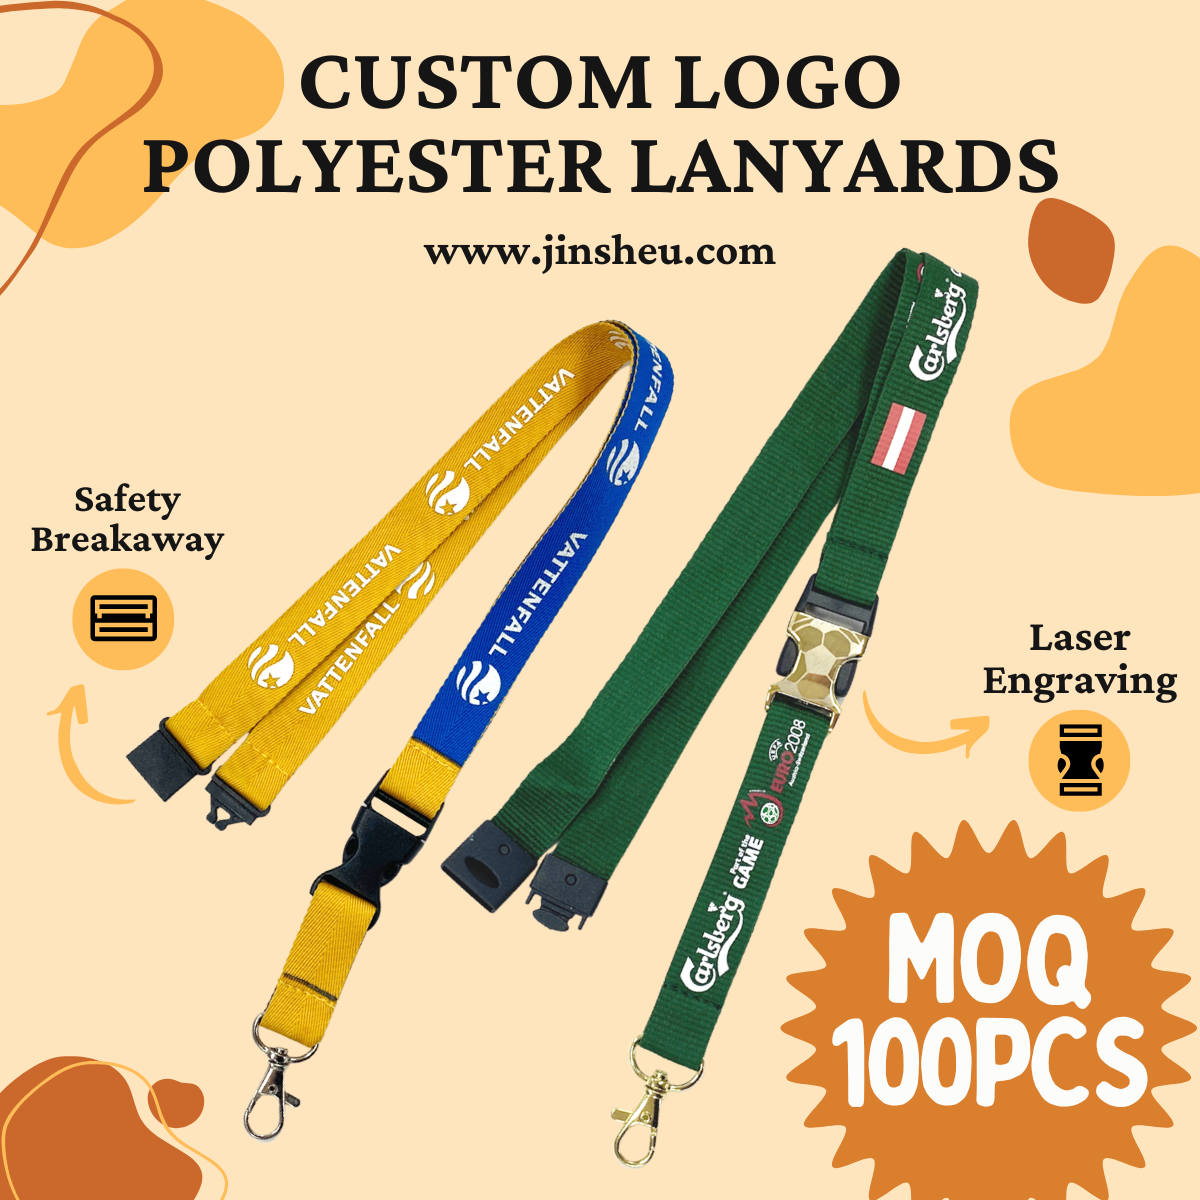 Wholesale Custom Flat Polyester Lanyards | Promotional Lanyards